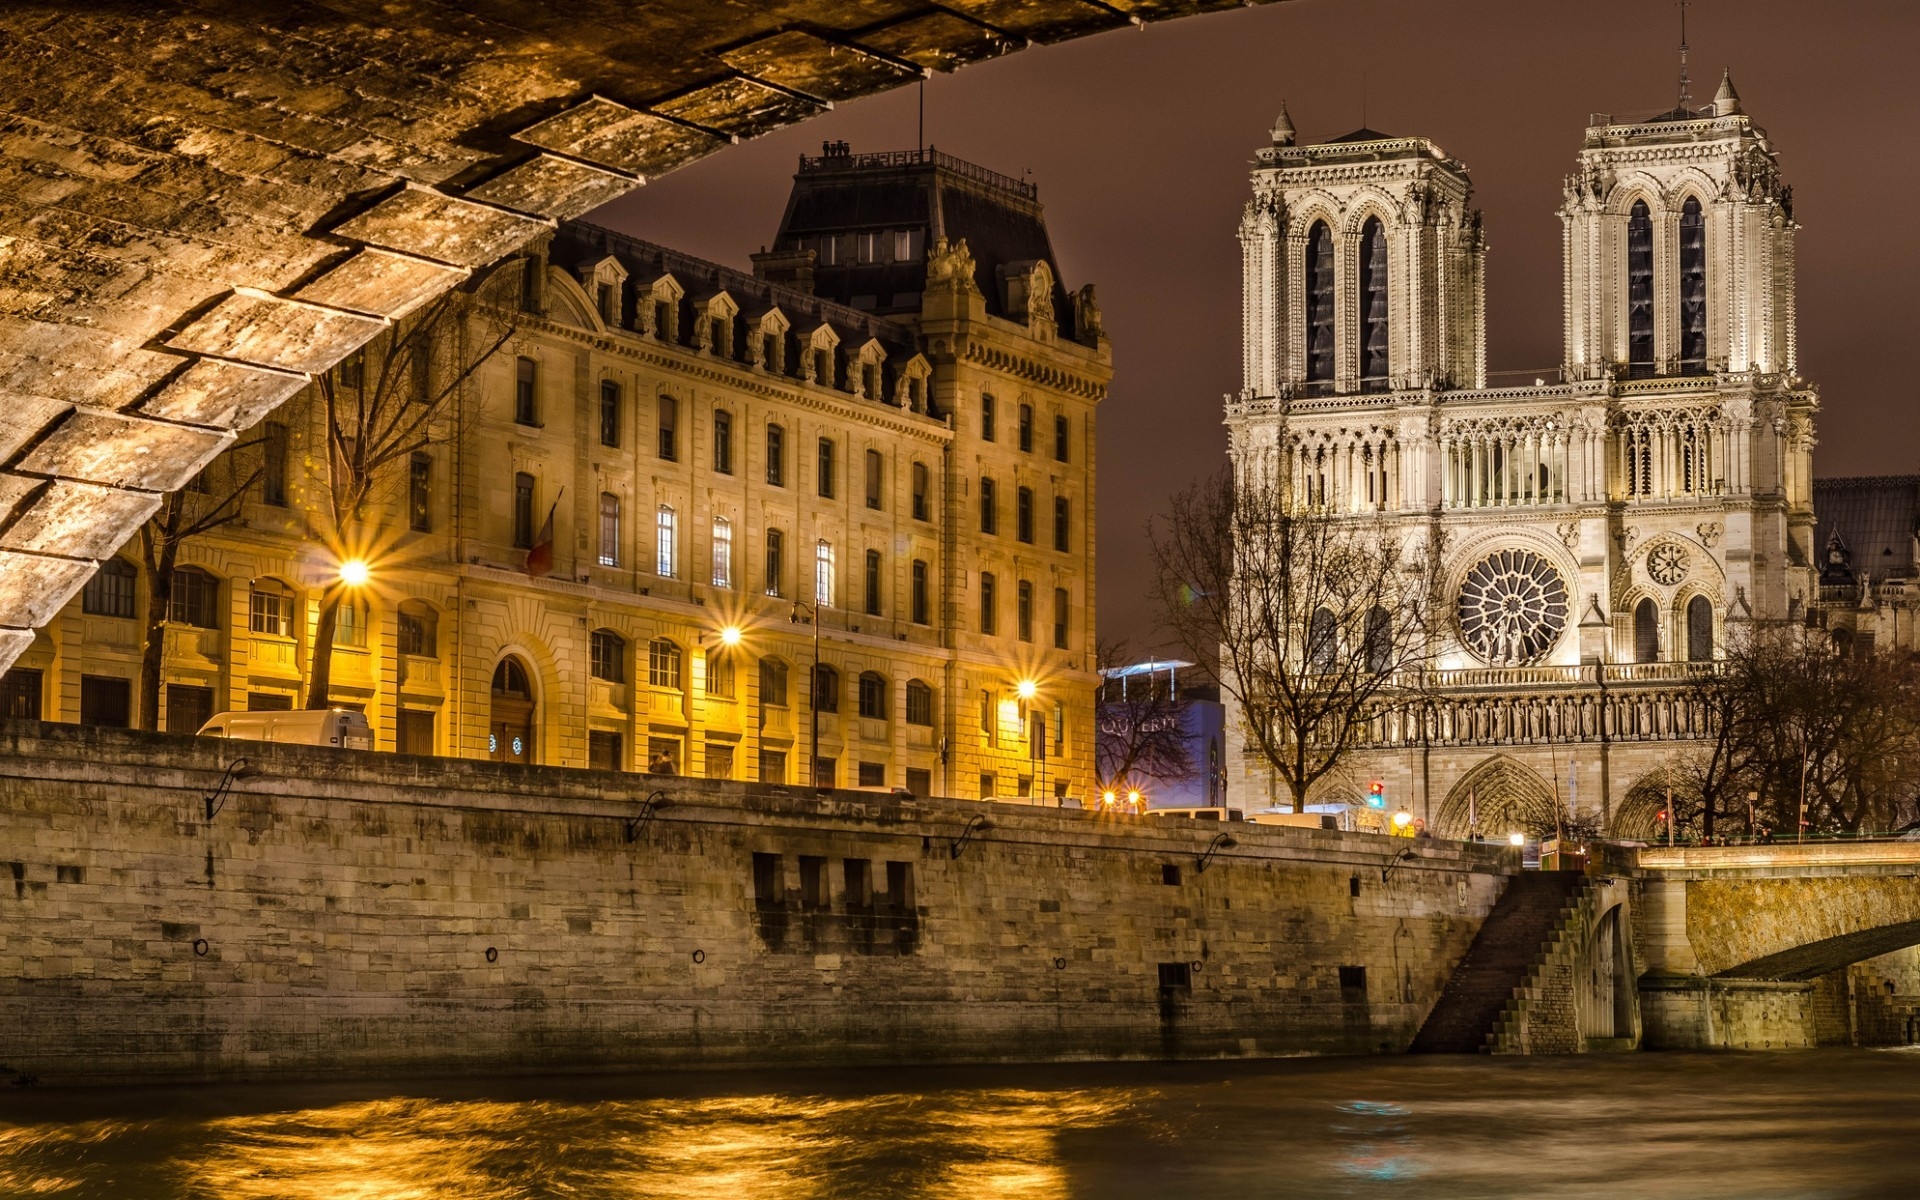 Notre Dame de Paris Front View for 1920 x 1200 widescreen resolution